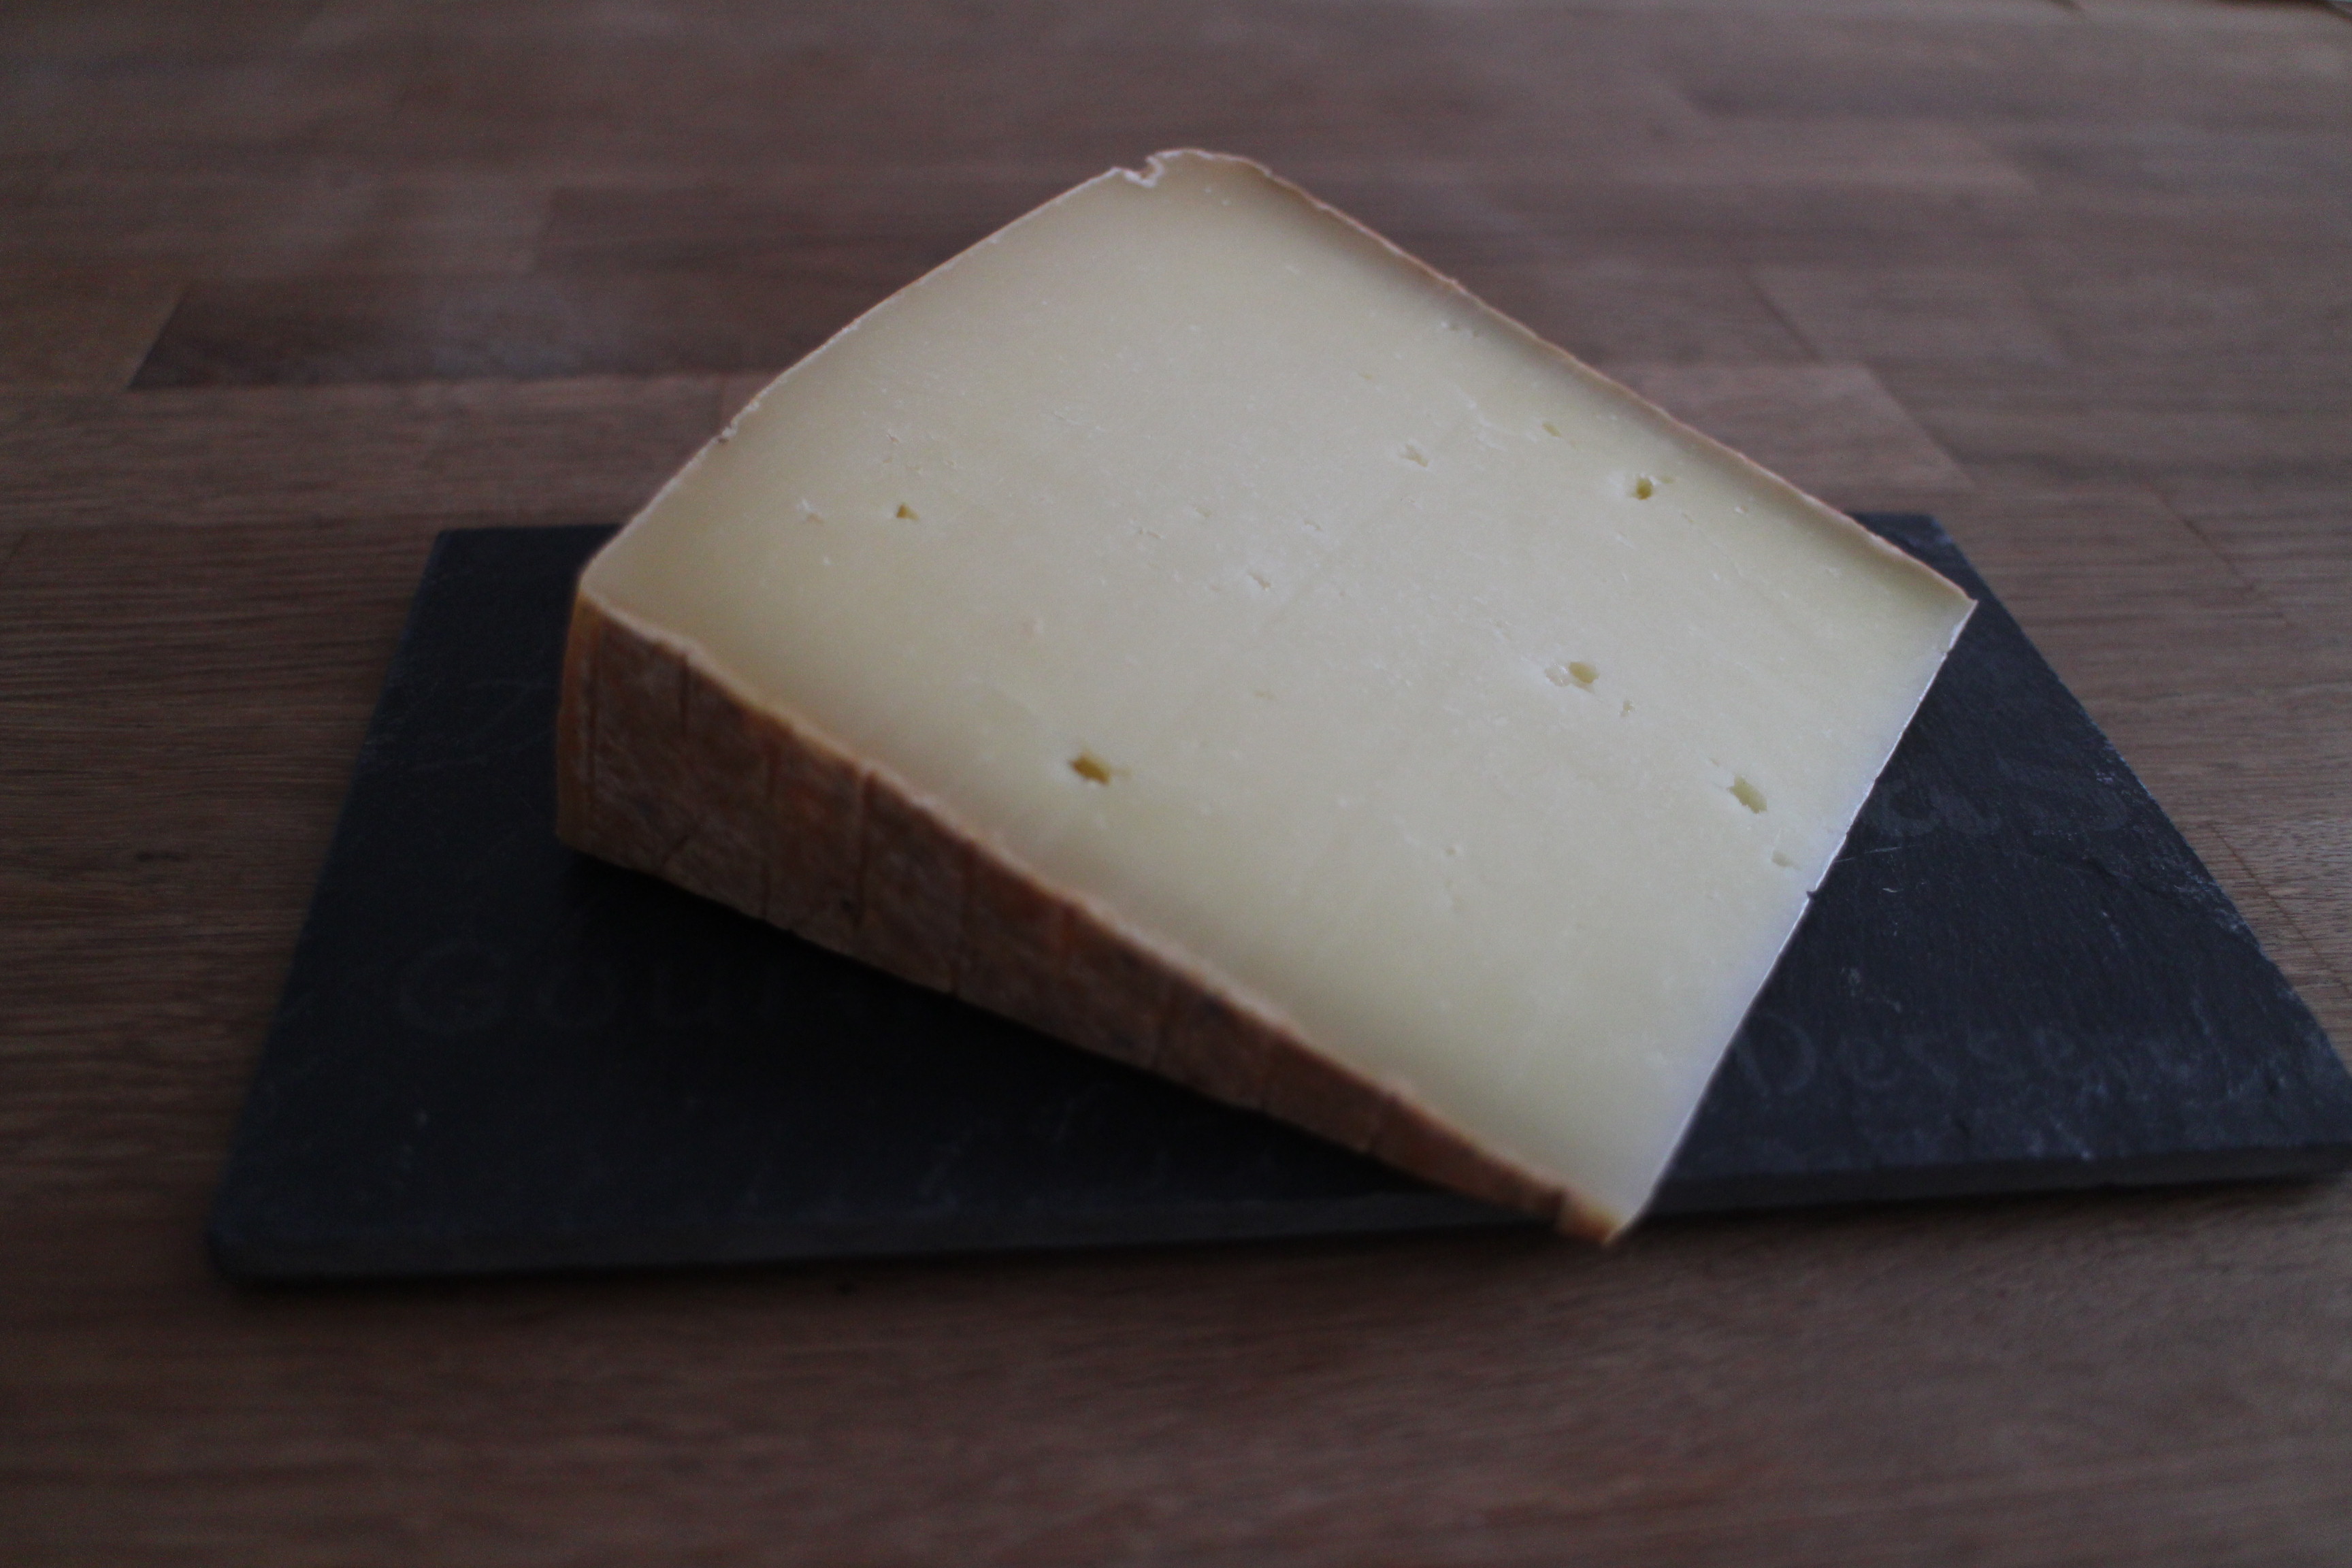 Le plateau de fromages 100% Italie – Les fromages de Clairette